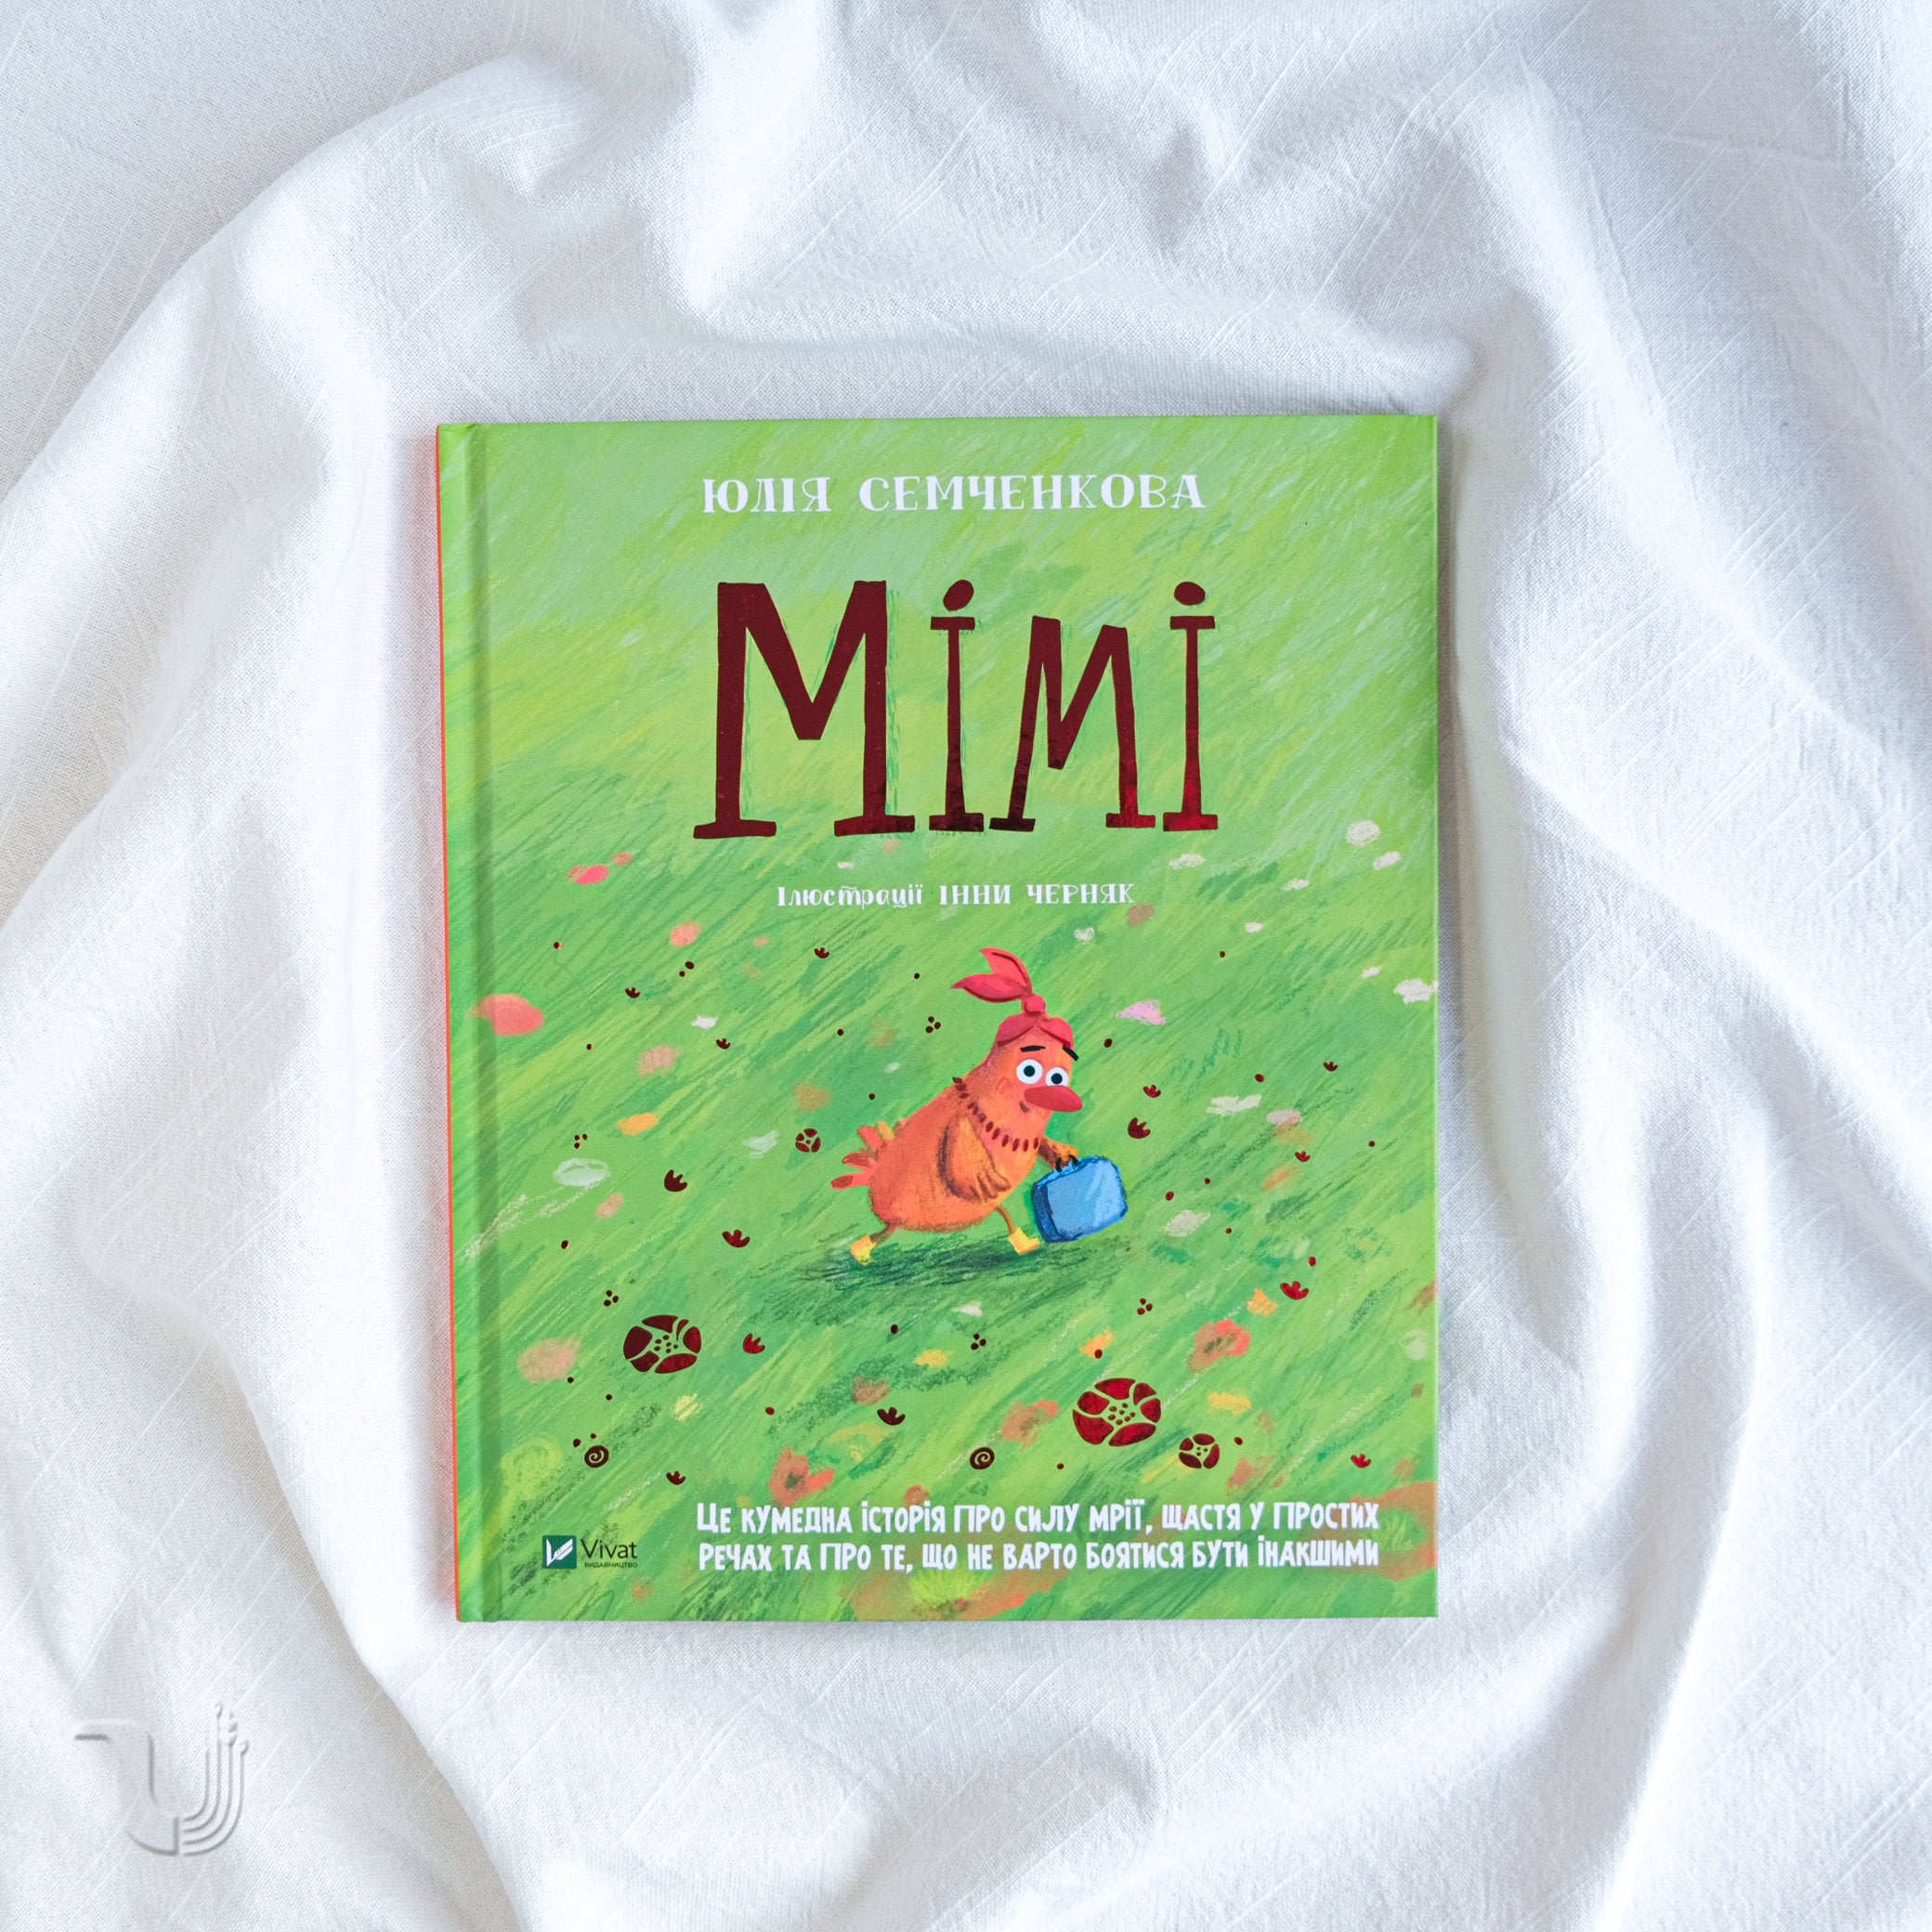 Mimi – Ukrainian Pages